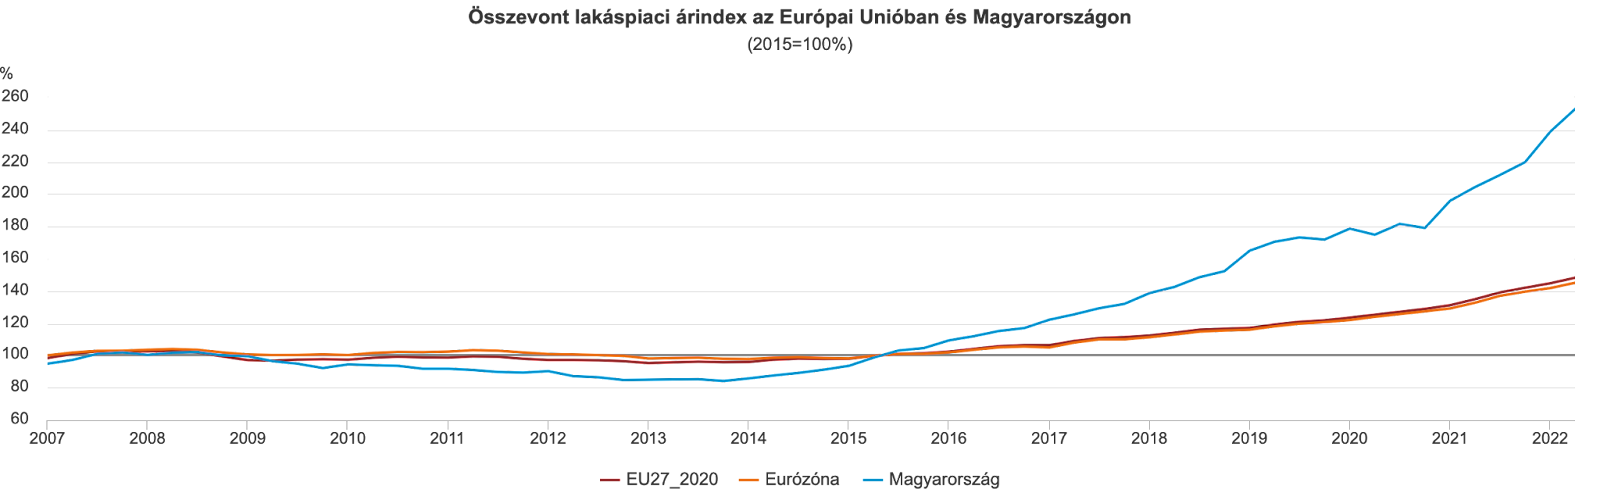 Összevont lakáspiaci árindex az EU-ban és Magyarországon